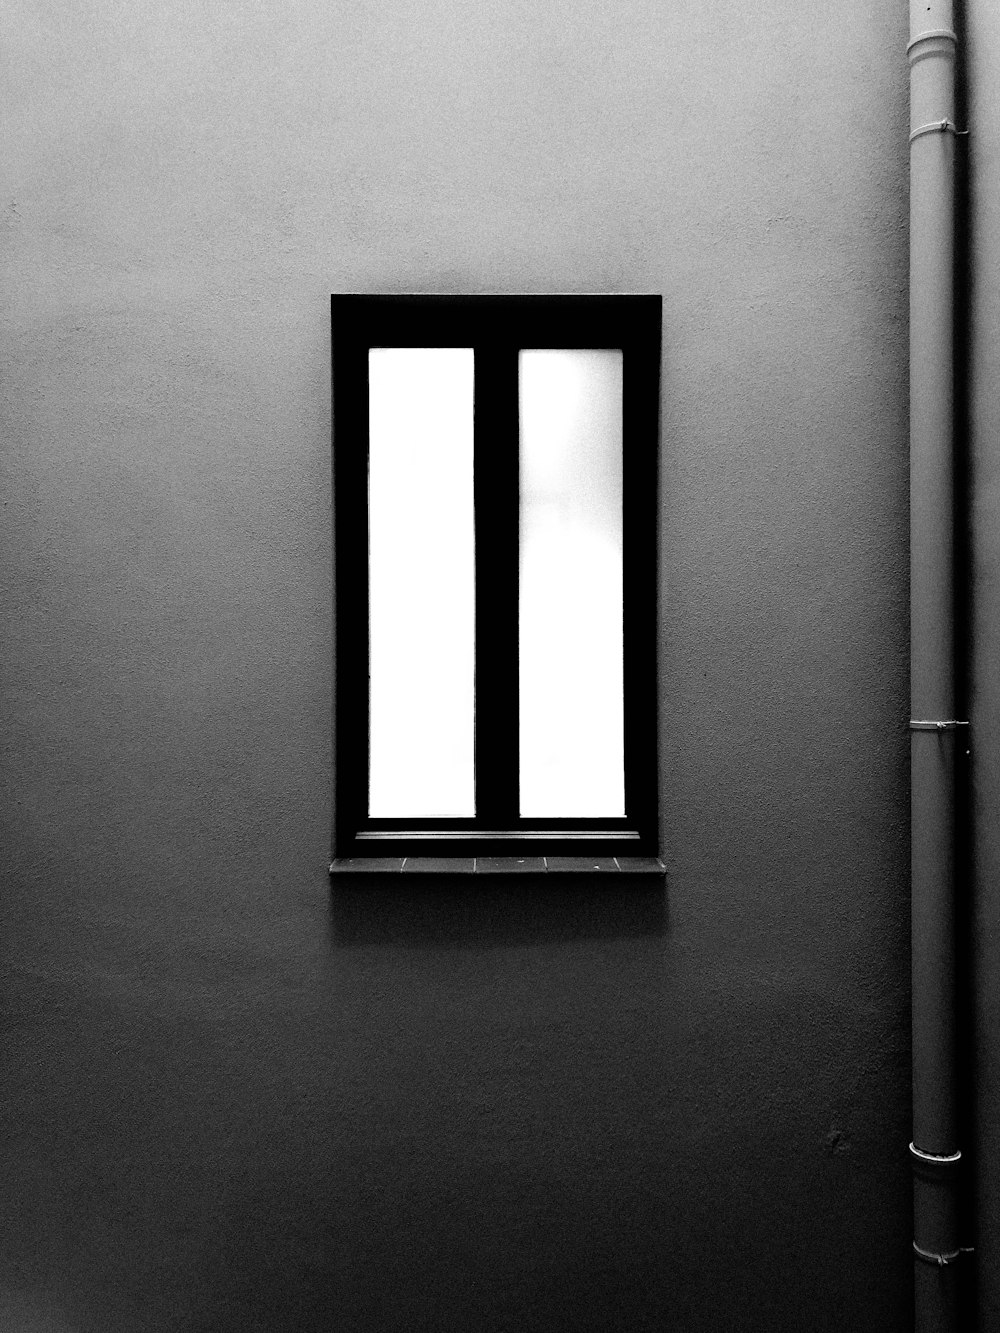 janela fechada com moldura preta perto da parede